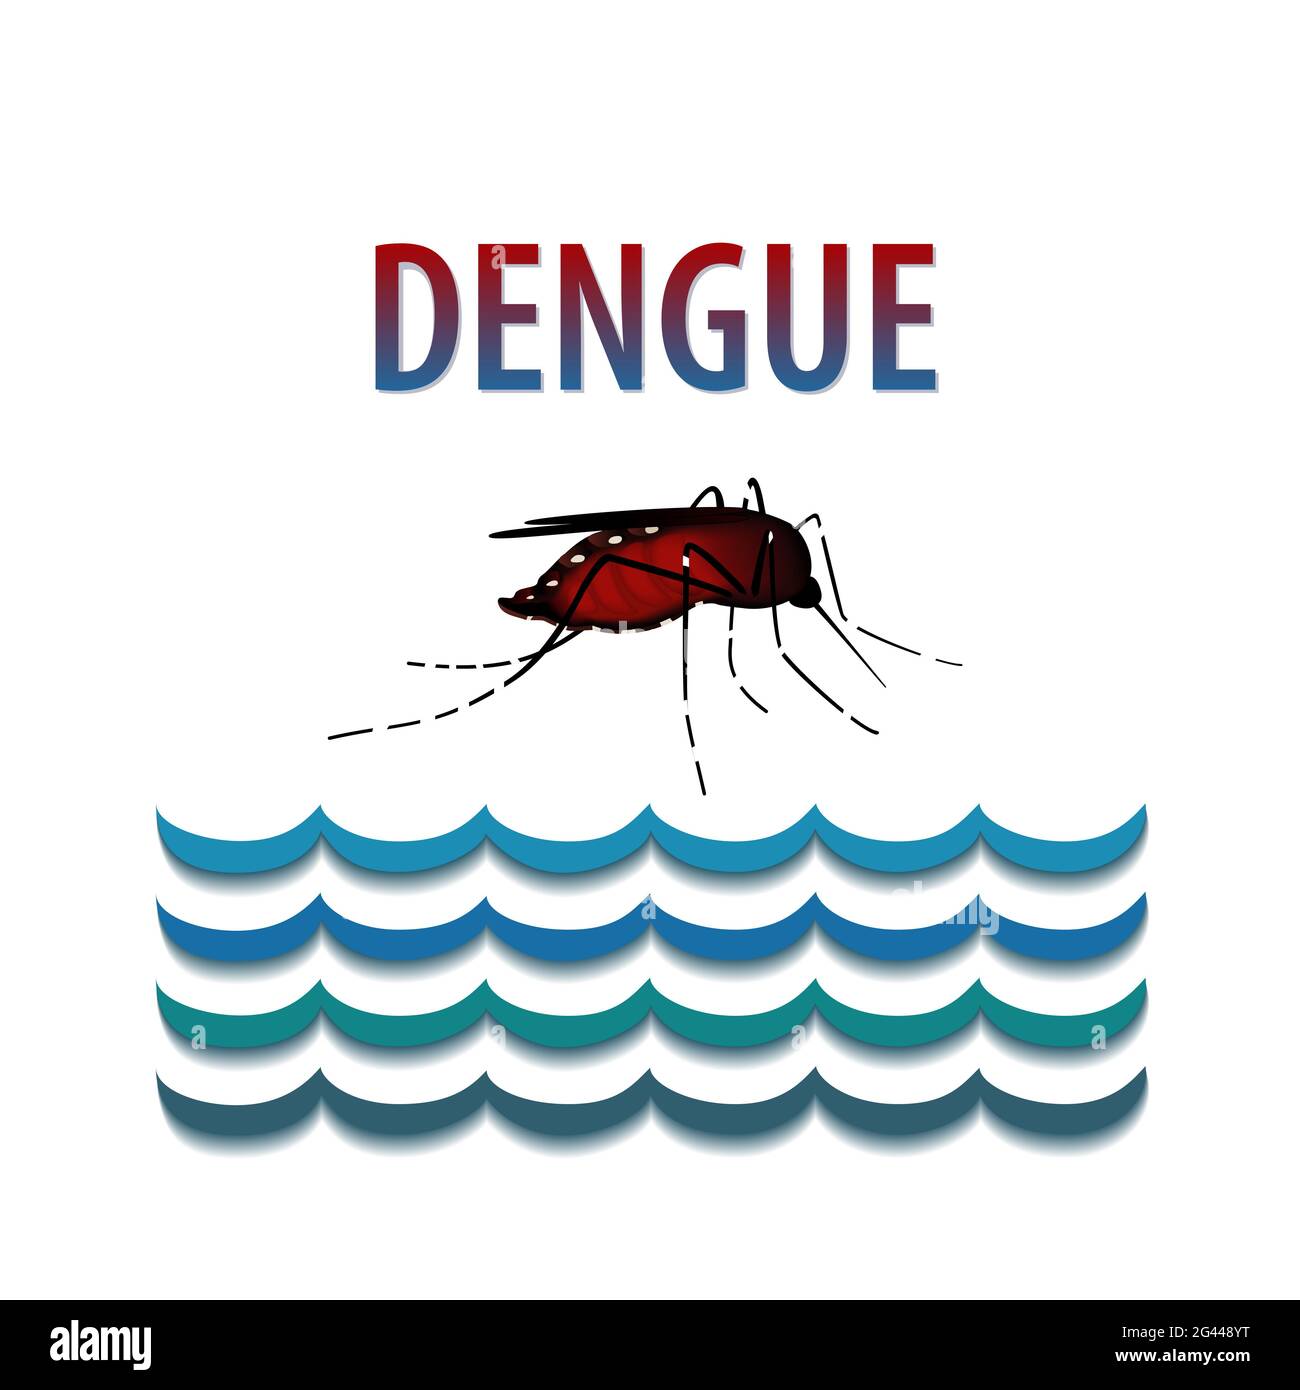 Febbre dengue, zanzara, insetto morbillo riempito di sangue, acqua in piedi, rischio per la salute pubblica, vettore di malattie infettive isolato su sfondo bianco Foto Stock